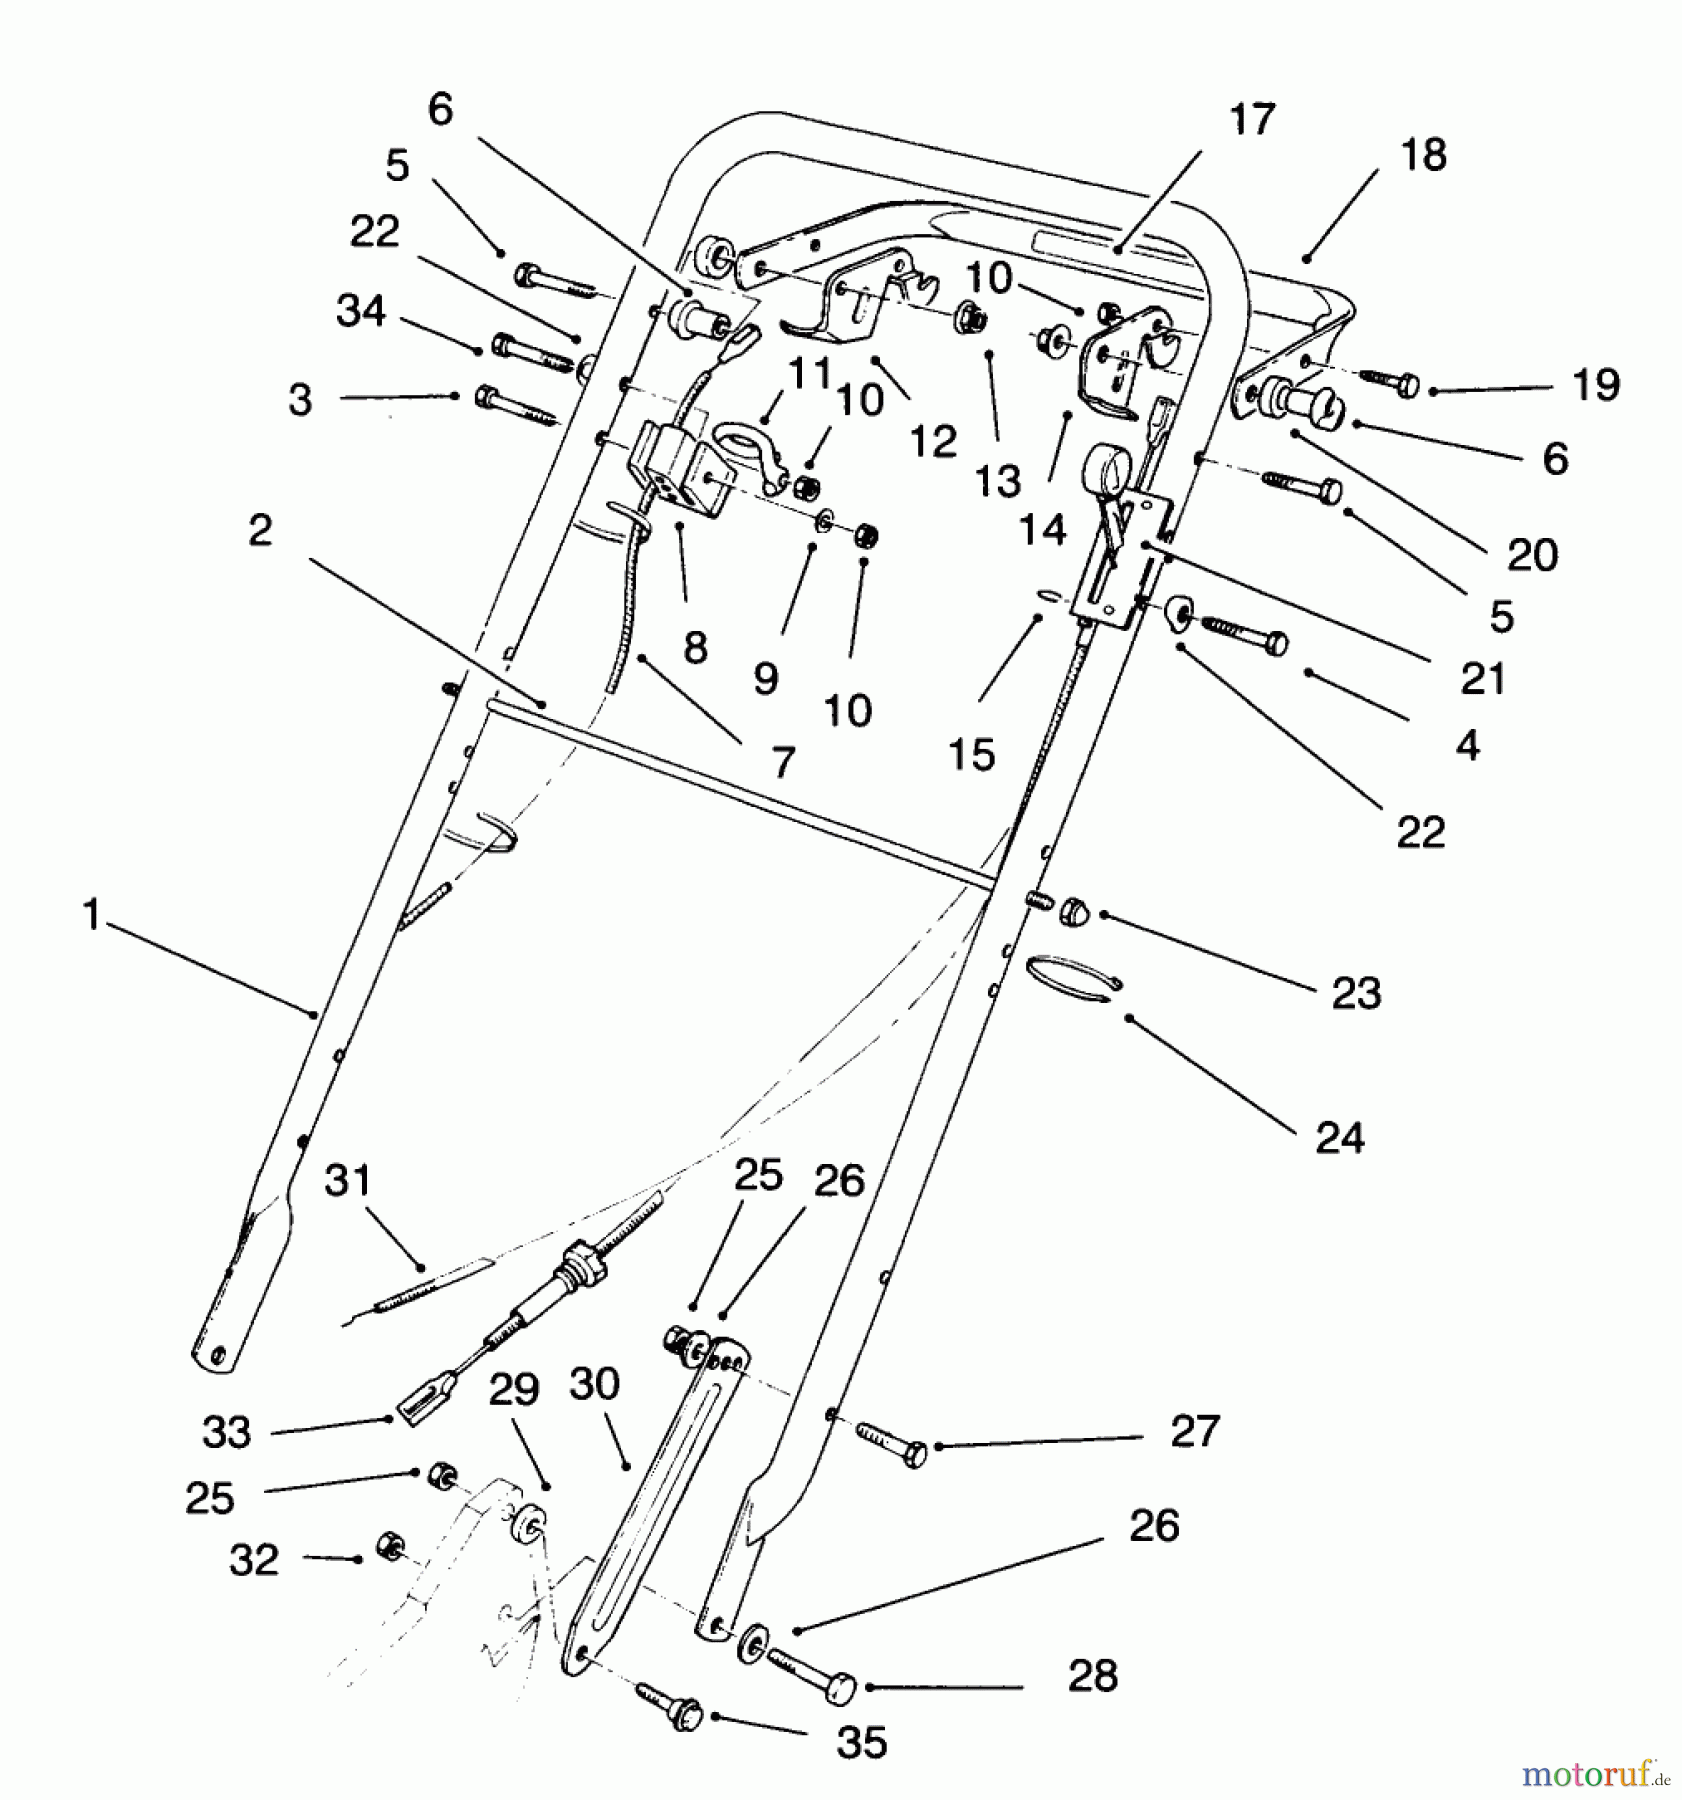  Toro Neu Mowers, Walk-Behind Seite 2 22150 - Toro Lawnmower, 1996 (6900001-6999999) HANDLE ASSEMBLY